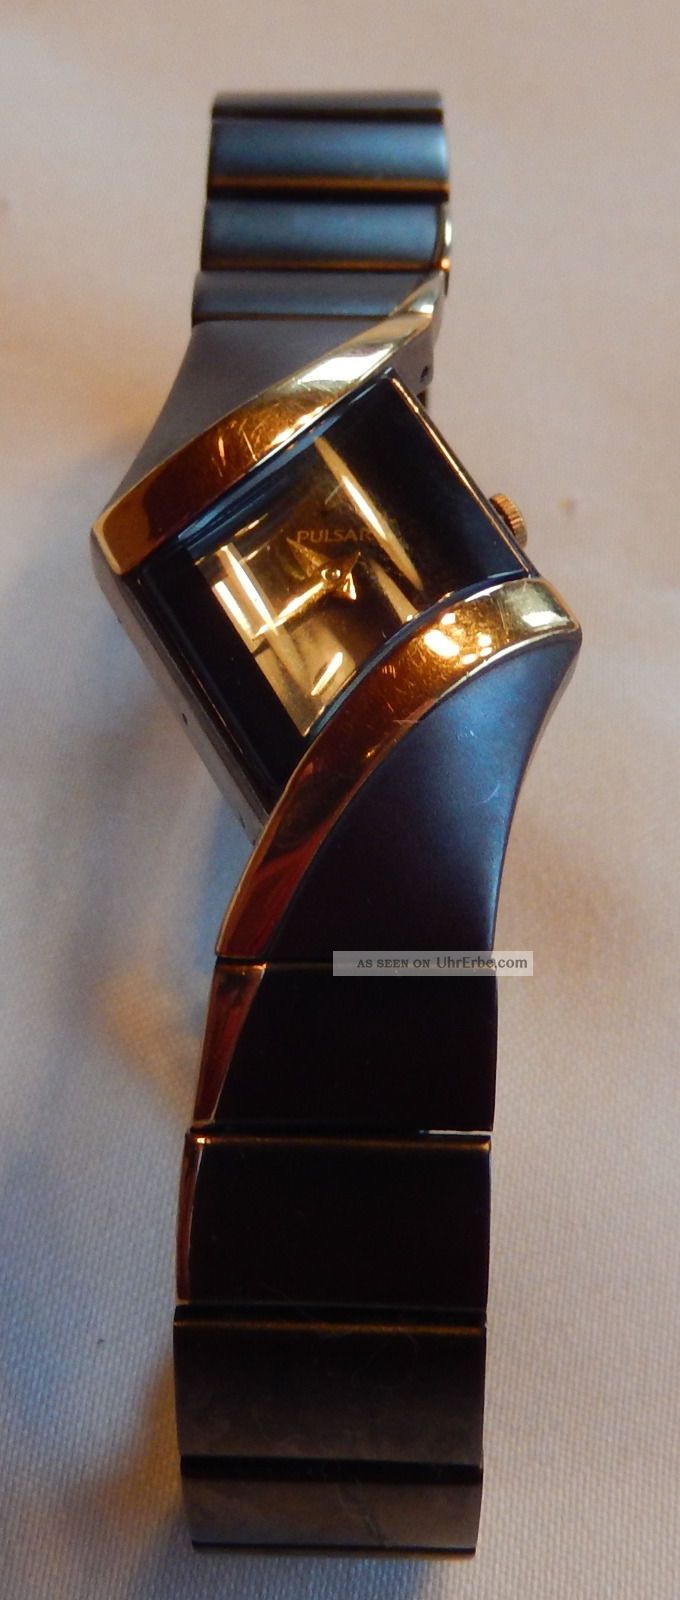 Asymetrische Damenuhr Pulsar Uhr Vc - 10 X031 Armbanduhren Bild